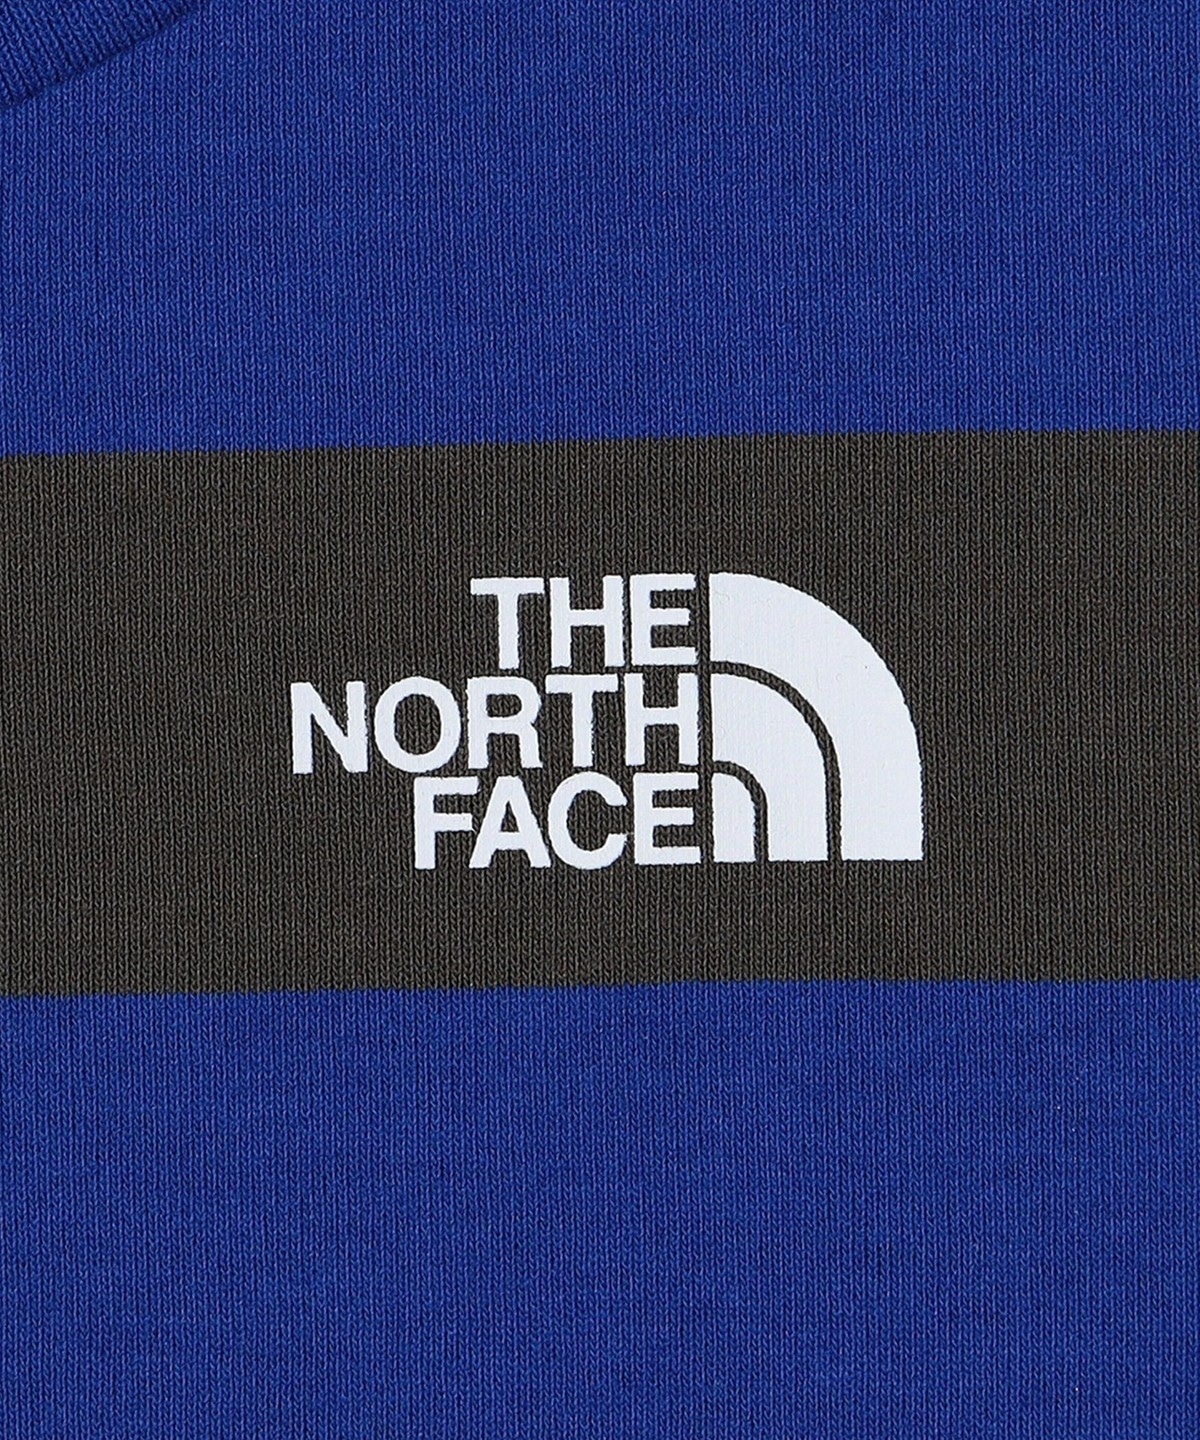 THE NORTH FACE: フィールド ボーダー 長袖 Tシャツ (ロンT)<KIDS>: T